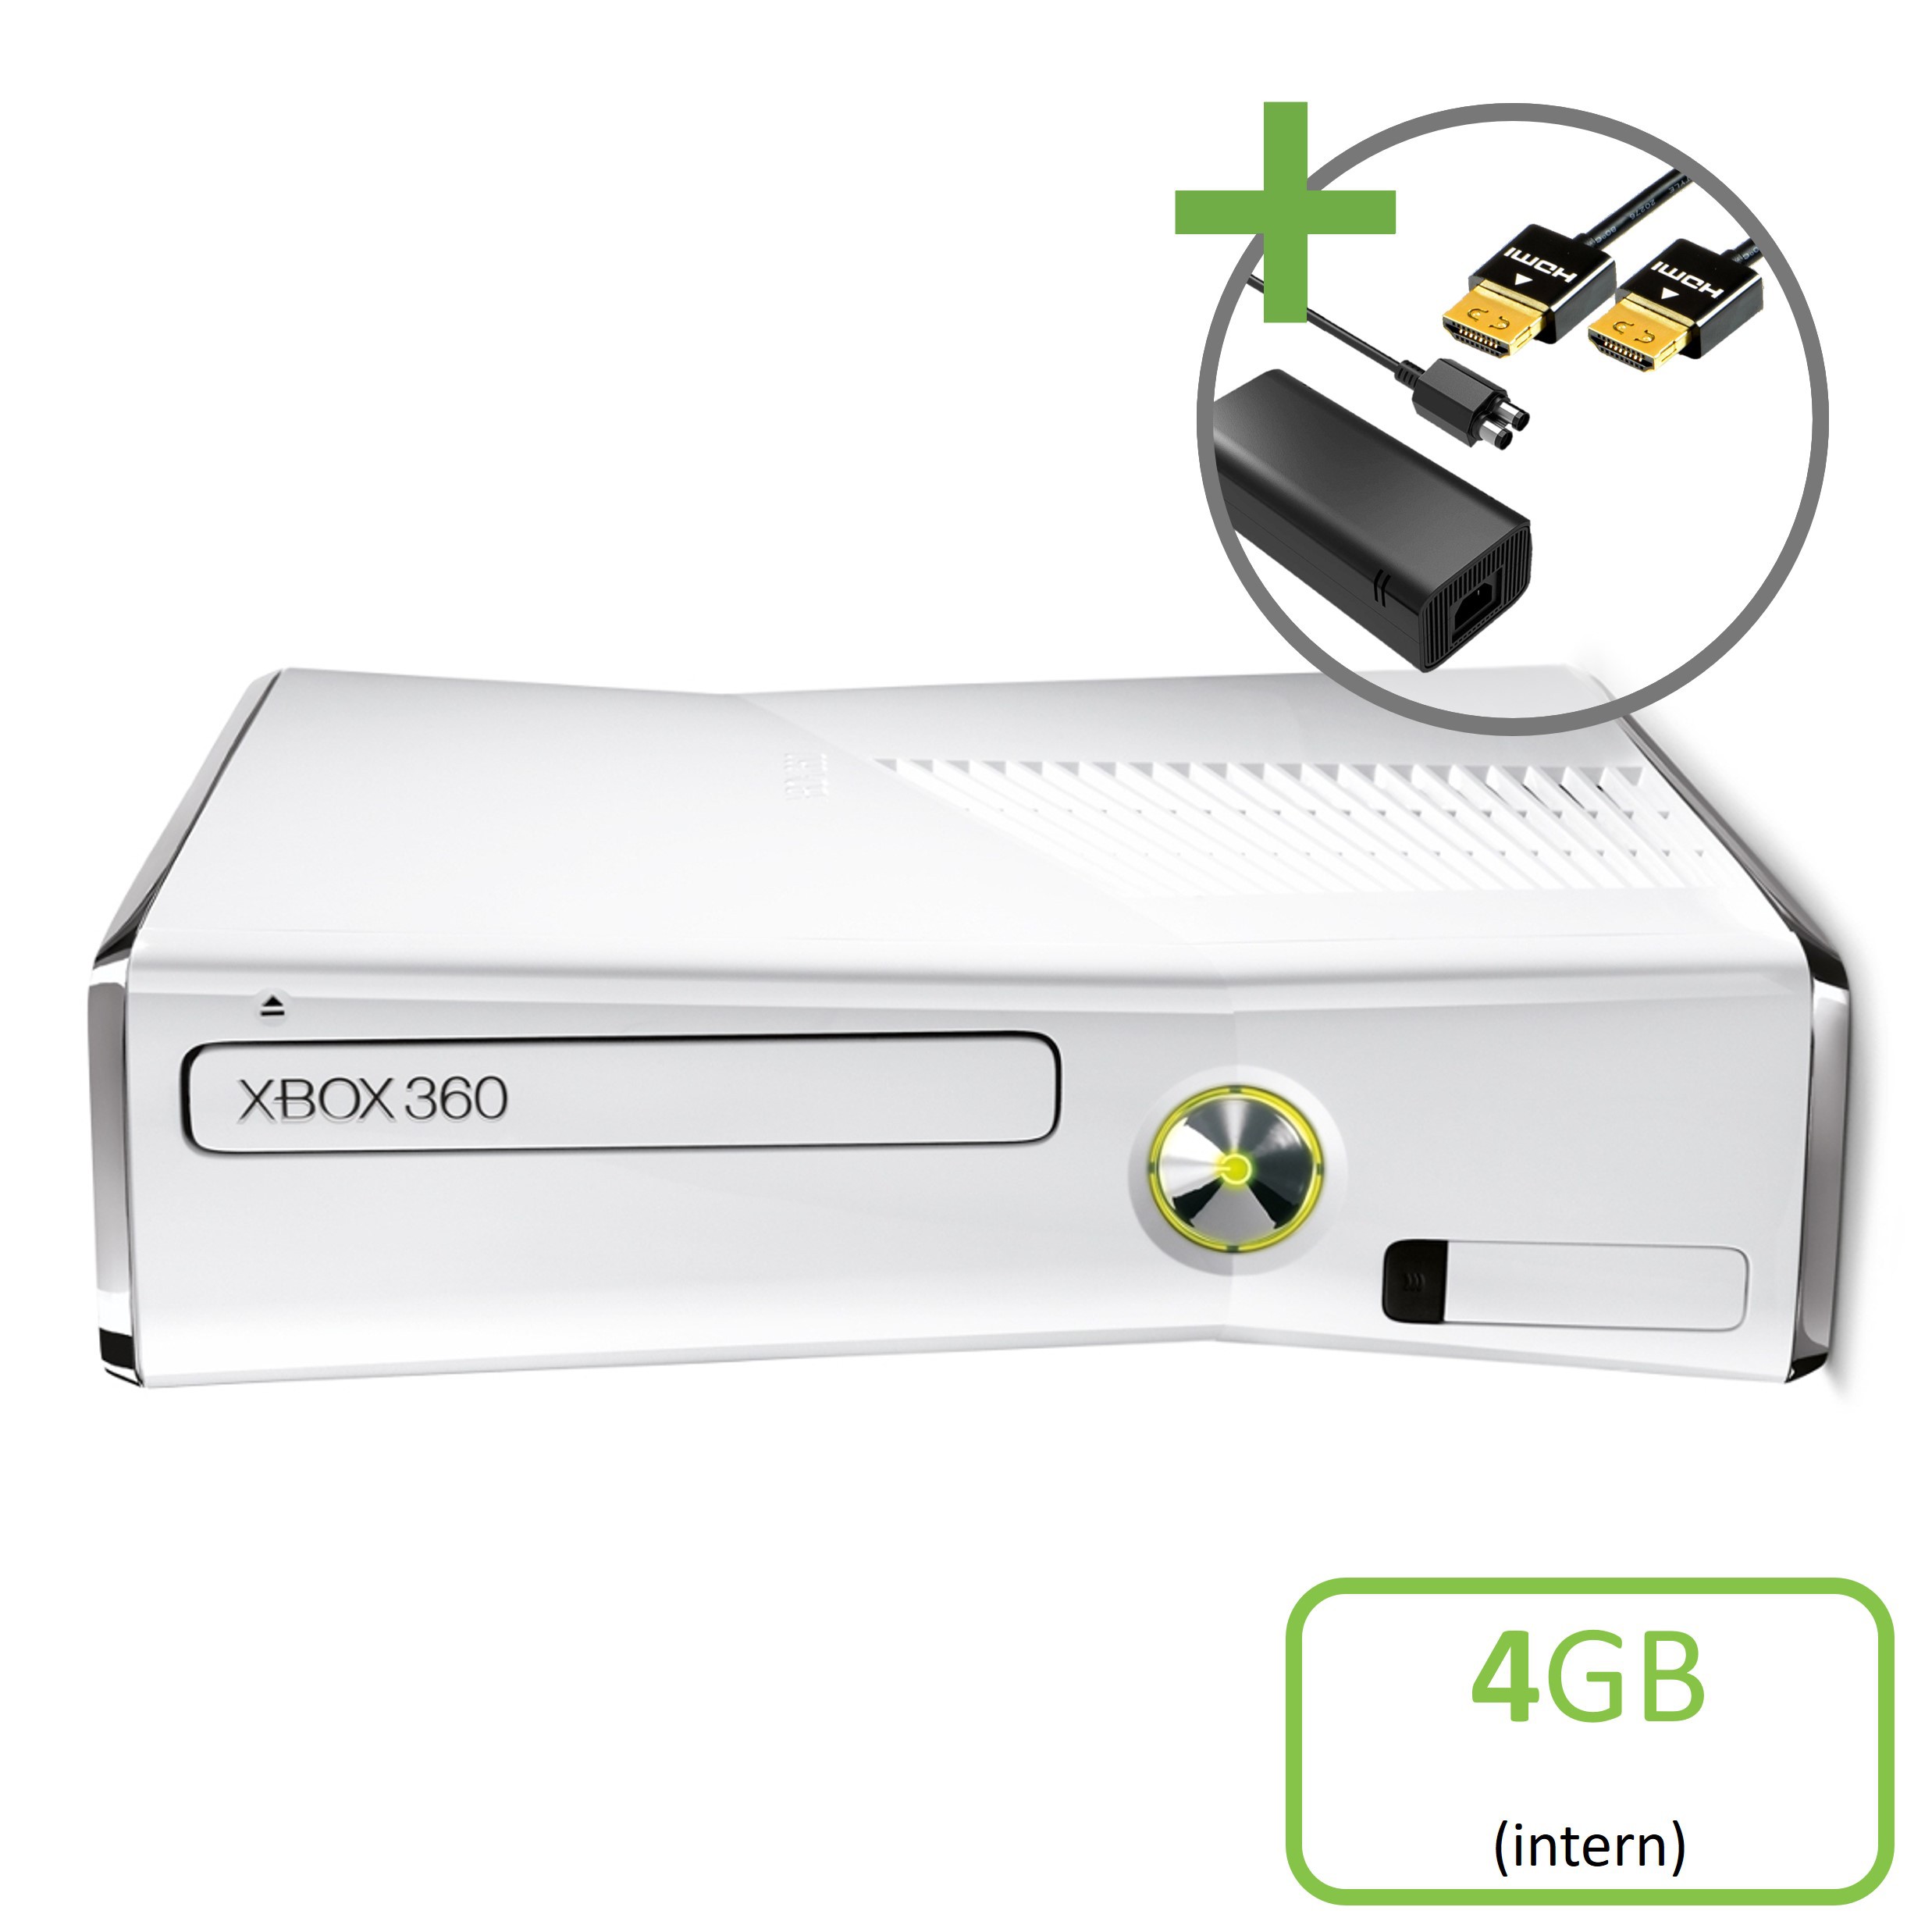 Microsoft Xbox 360 Slim Console White (4GB) - Xbox 360 Hardware - 2